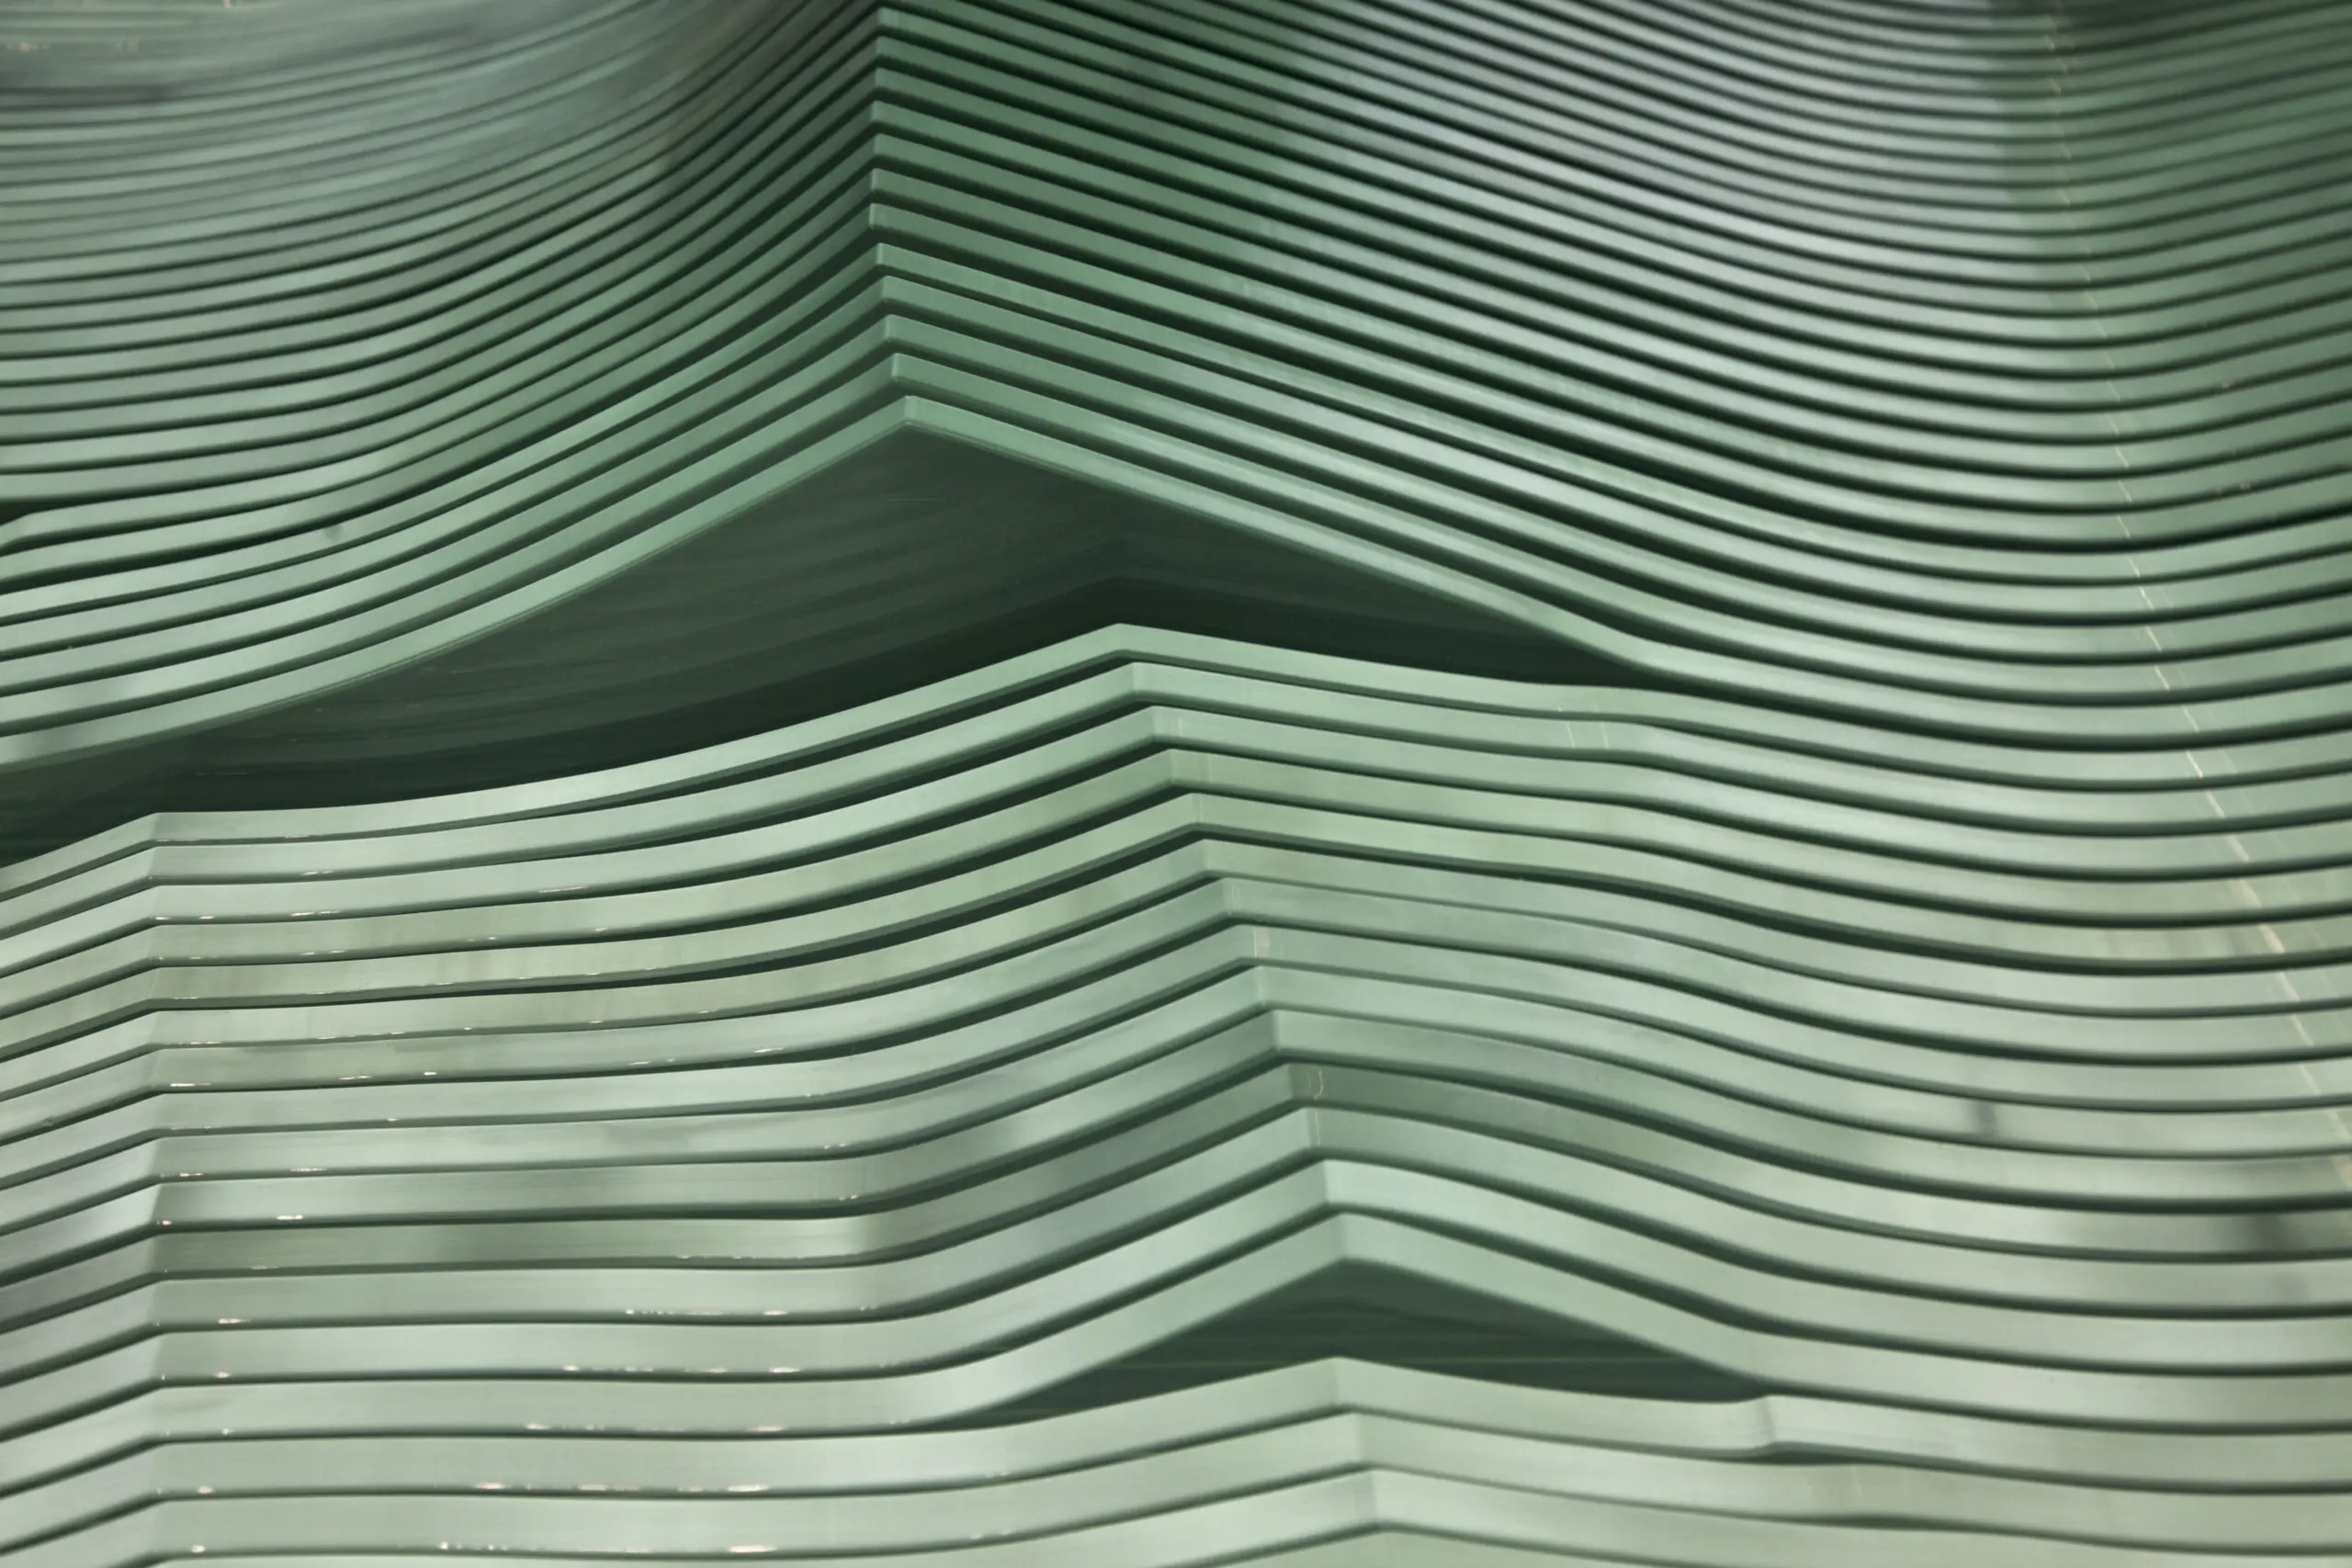 Wandbild (4076) Green wave präsentiert: Details und Strukturen,Abstrakt